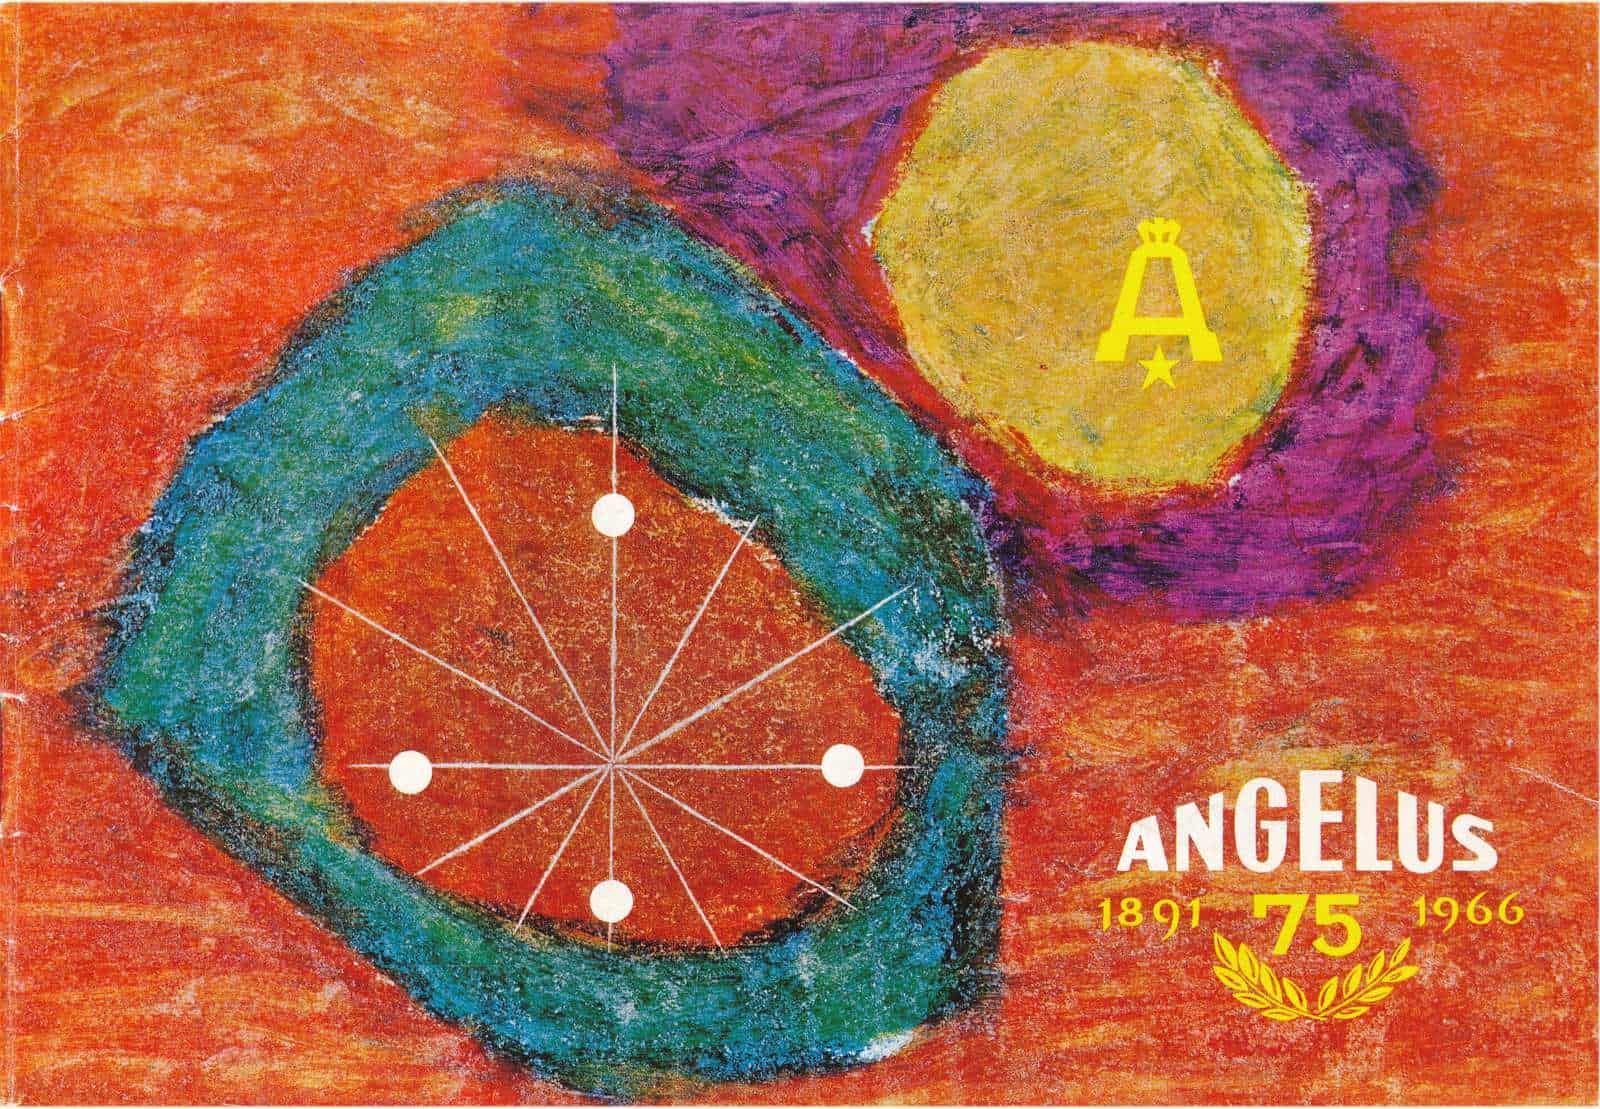 Katalog zum Jubiläum der Uhrenmarke Angelus von 1966